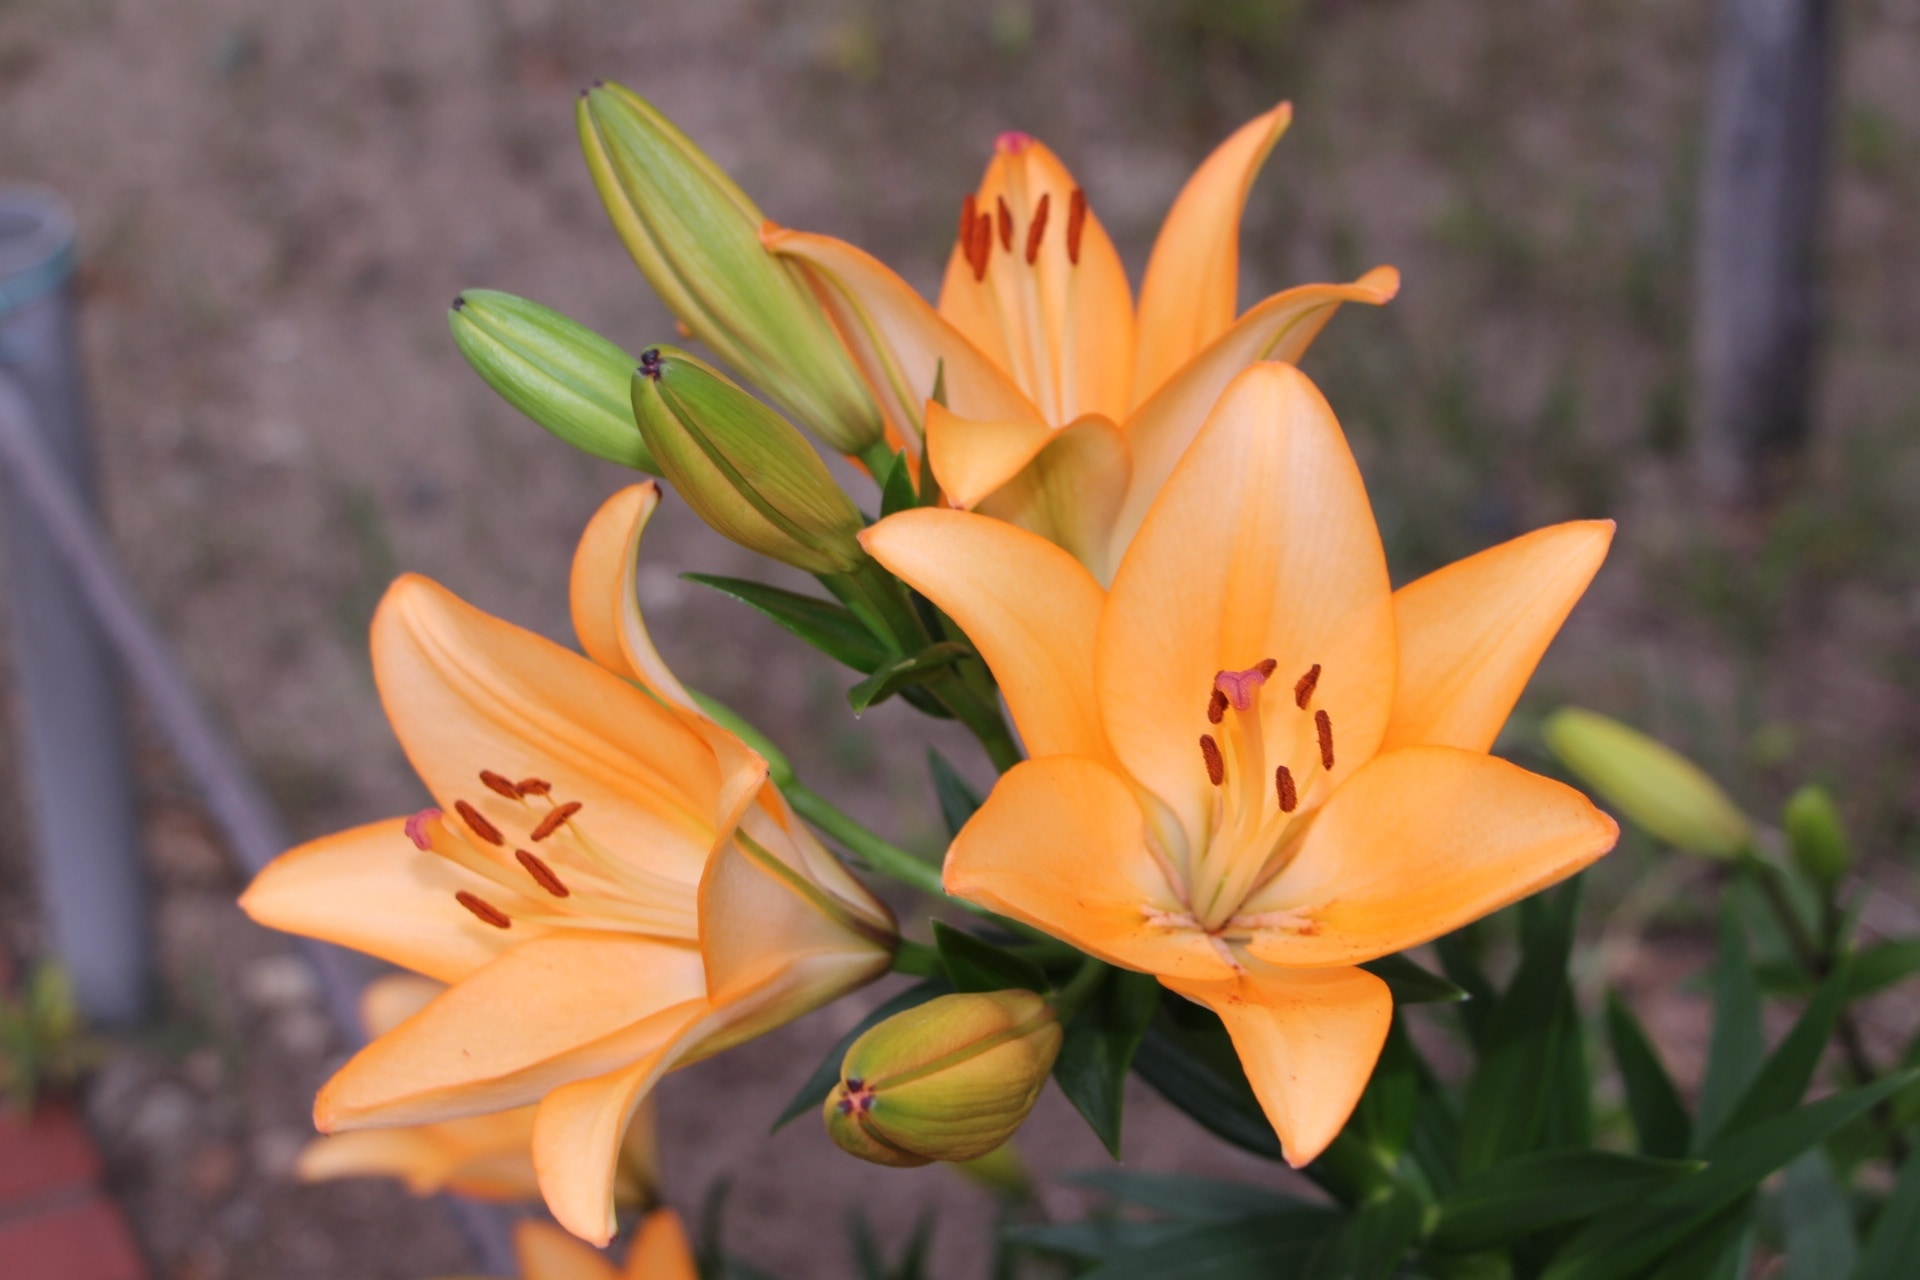 3 orange petaled flowers